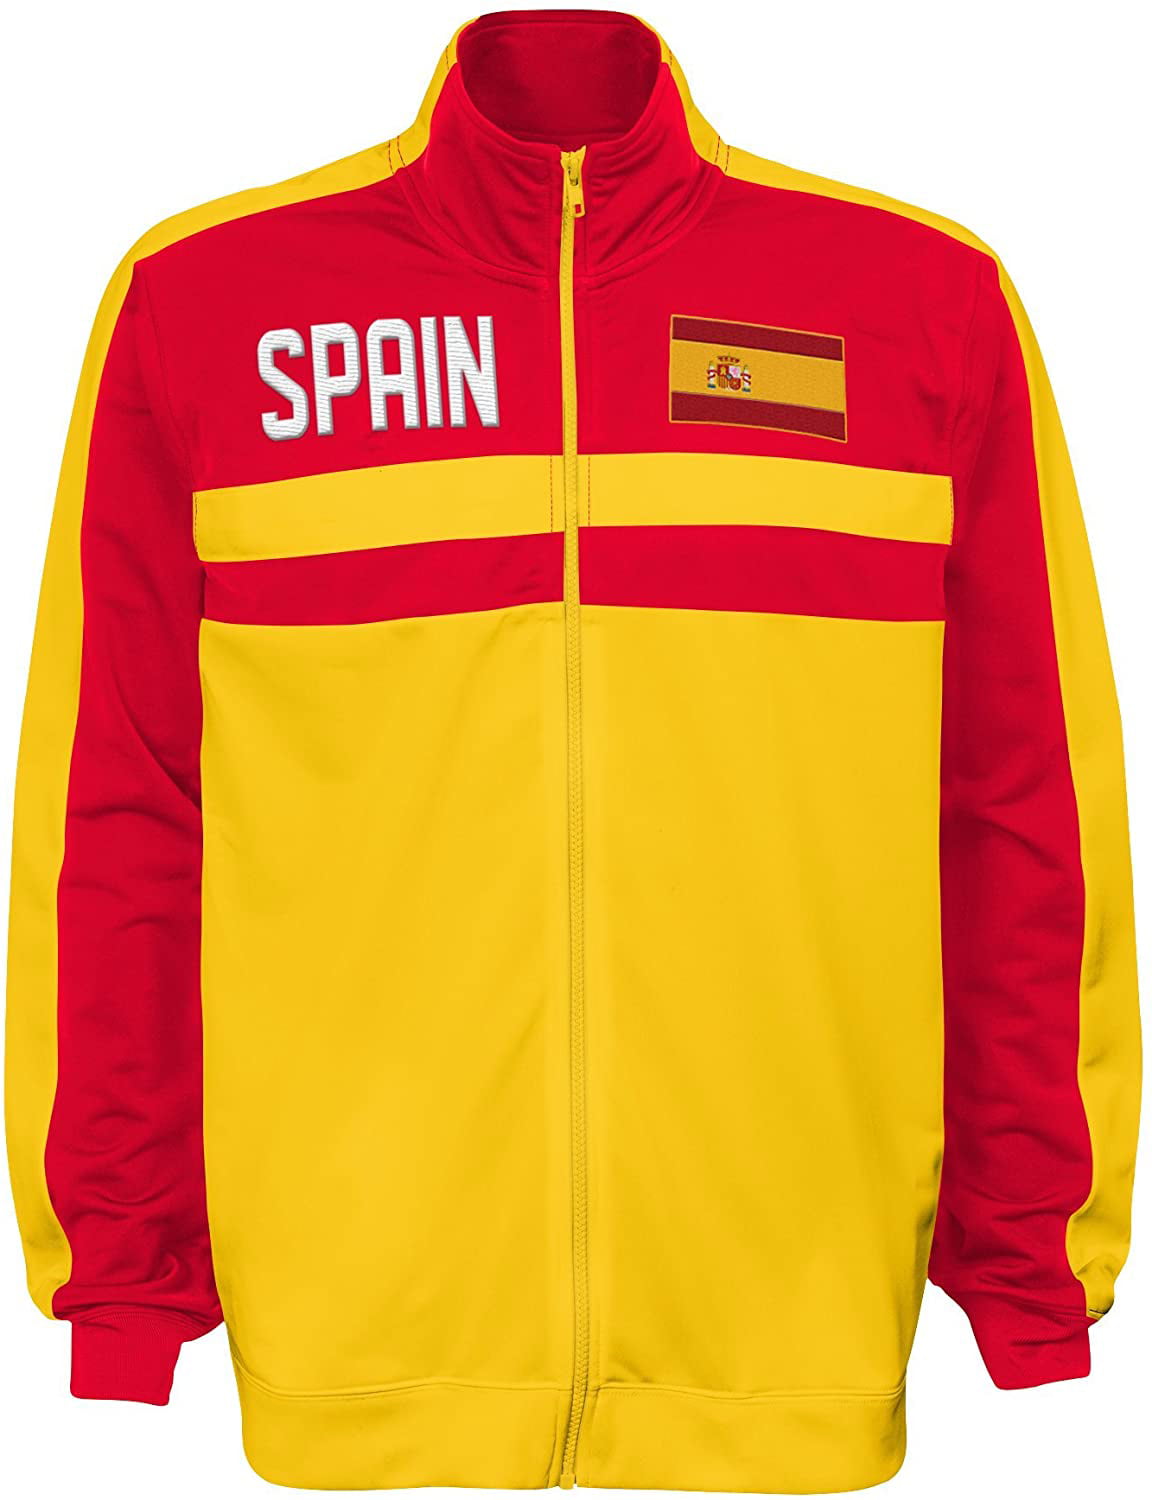 spain track jacket